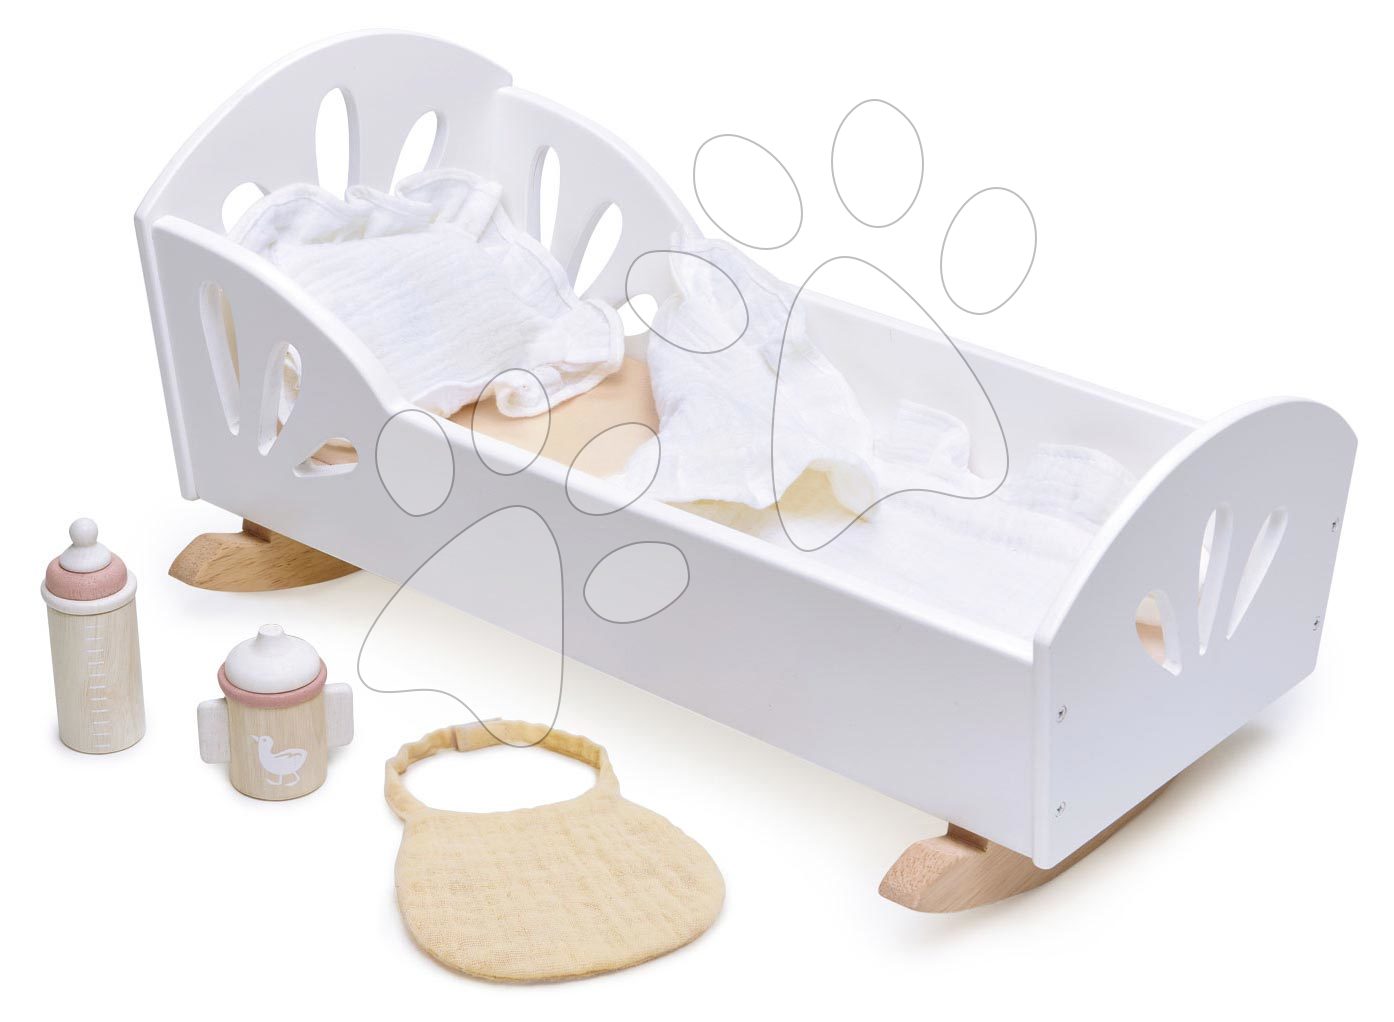 Fa bölcső hattyú Sweet Dreams Dolly Bed Tender Leaf Toys 36 cm játékbabának textil párnával és takaróval